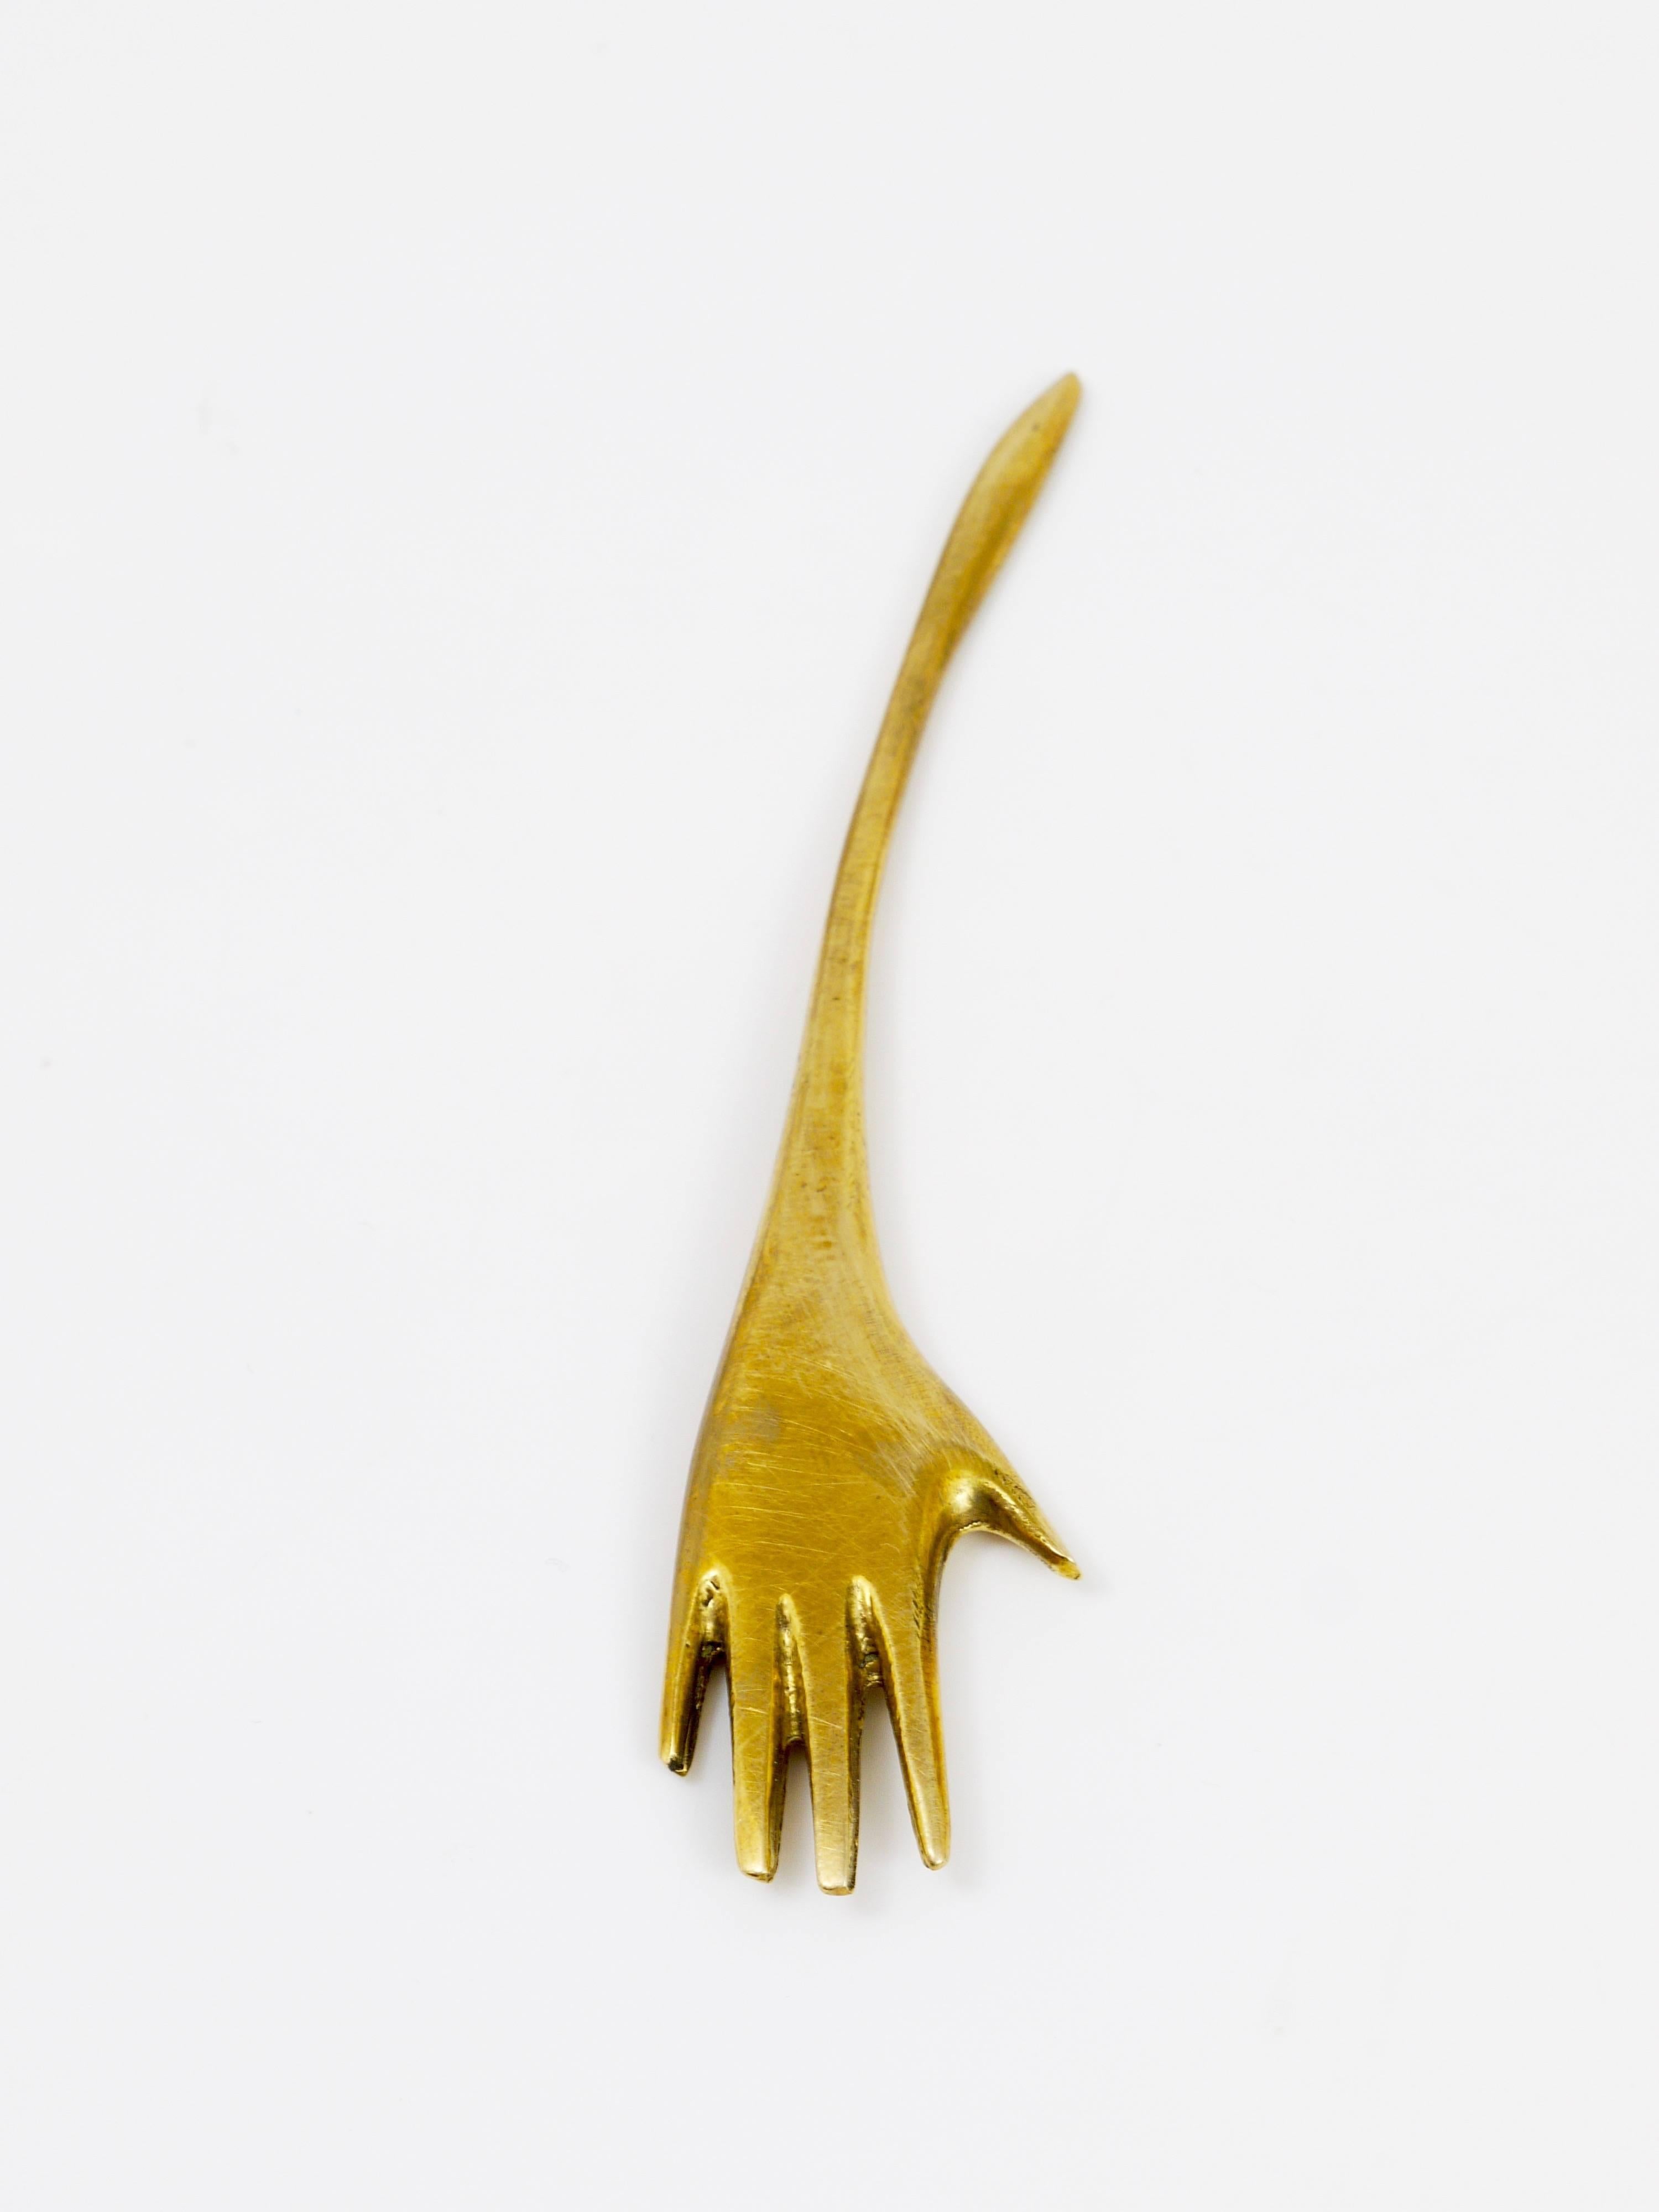 Mid-Century Modern Carl Auböck Hand Modernist Letter Opener Made of Brass